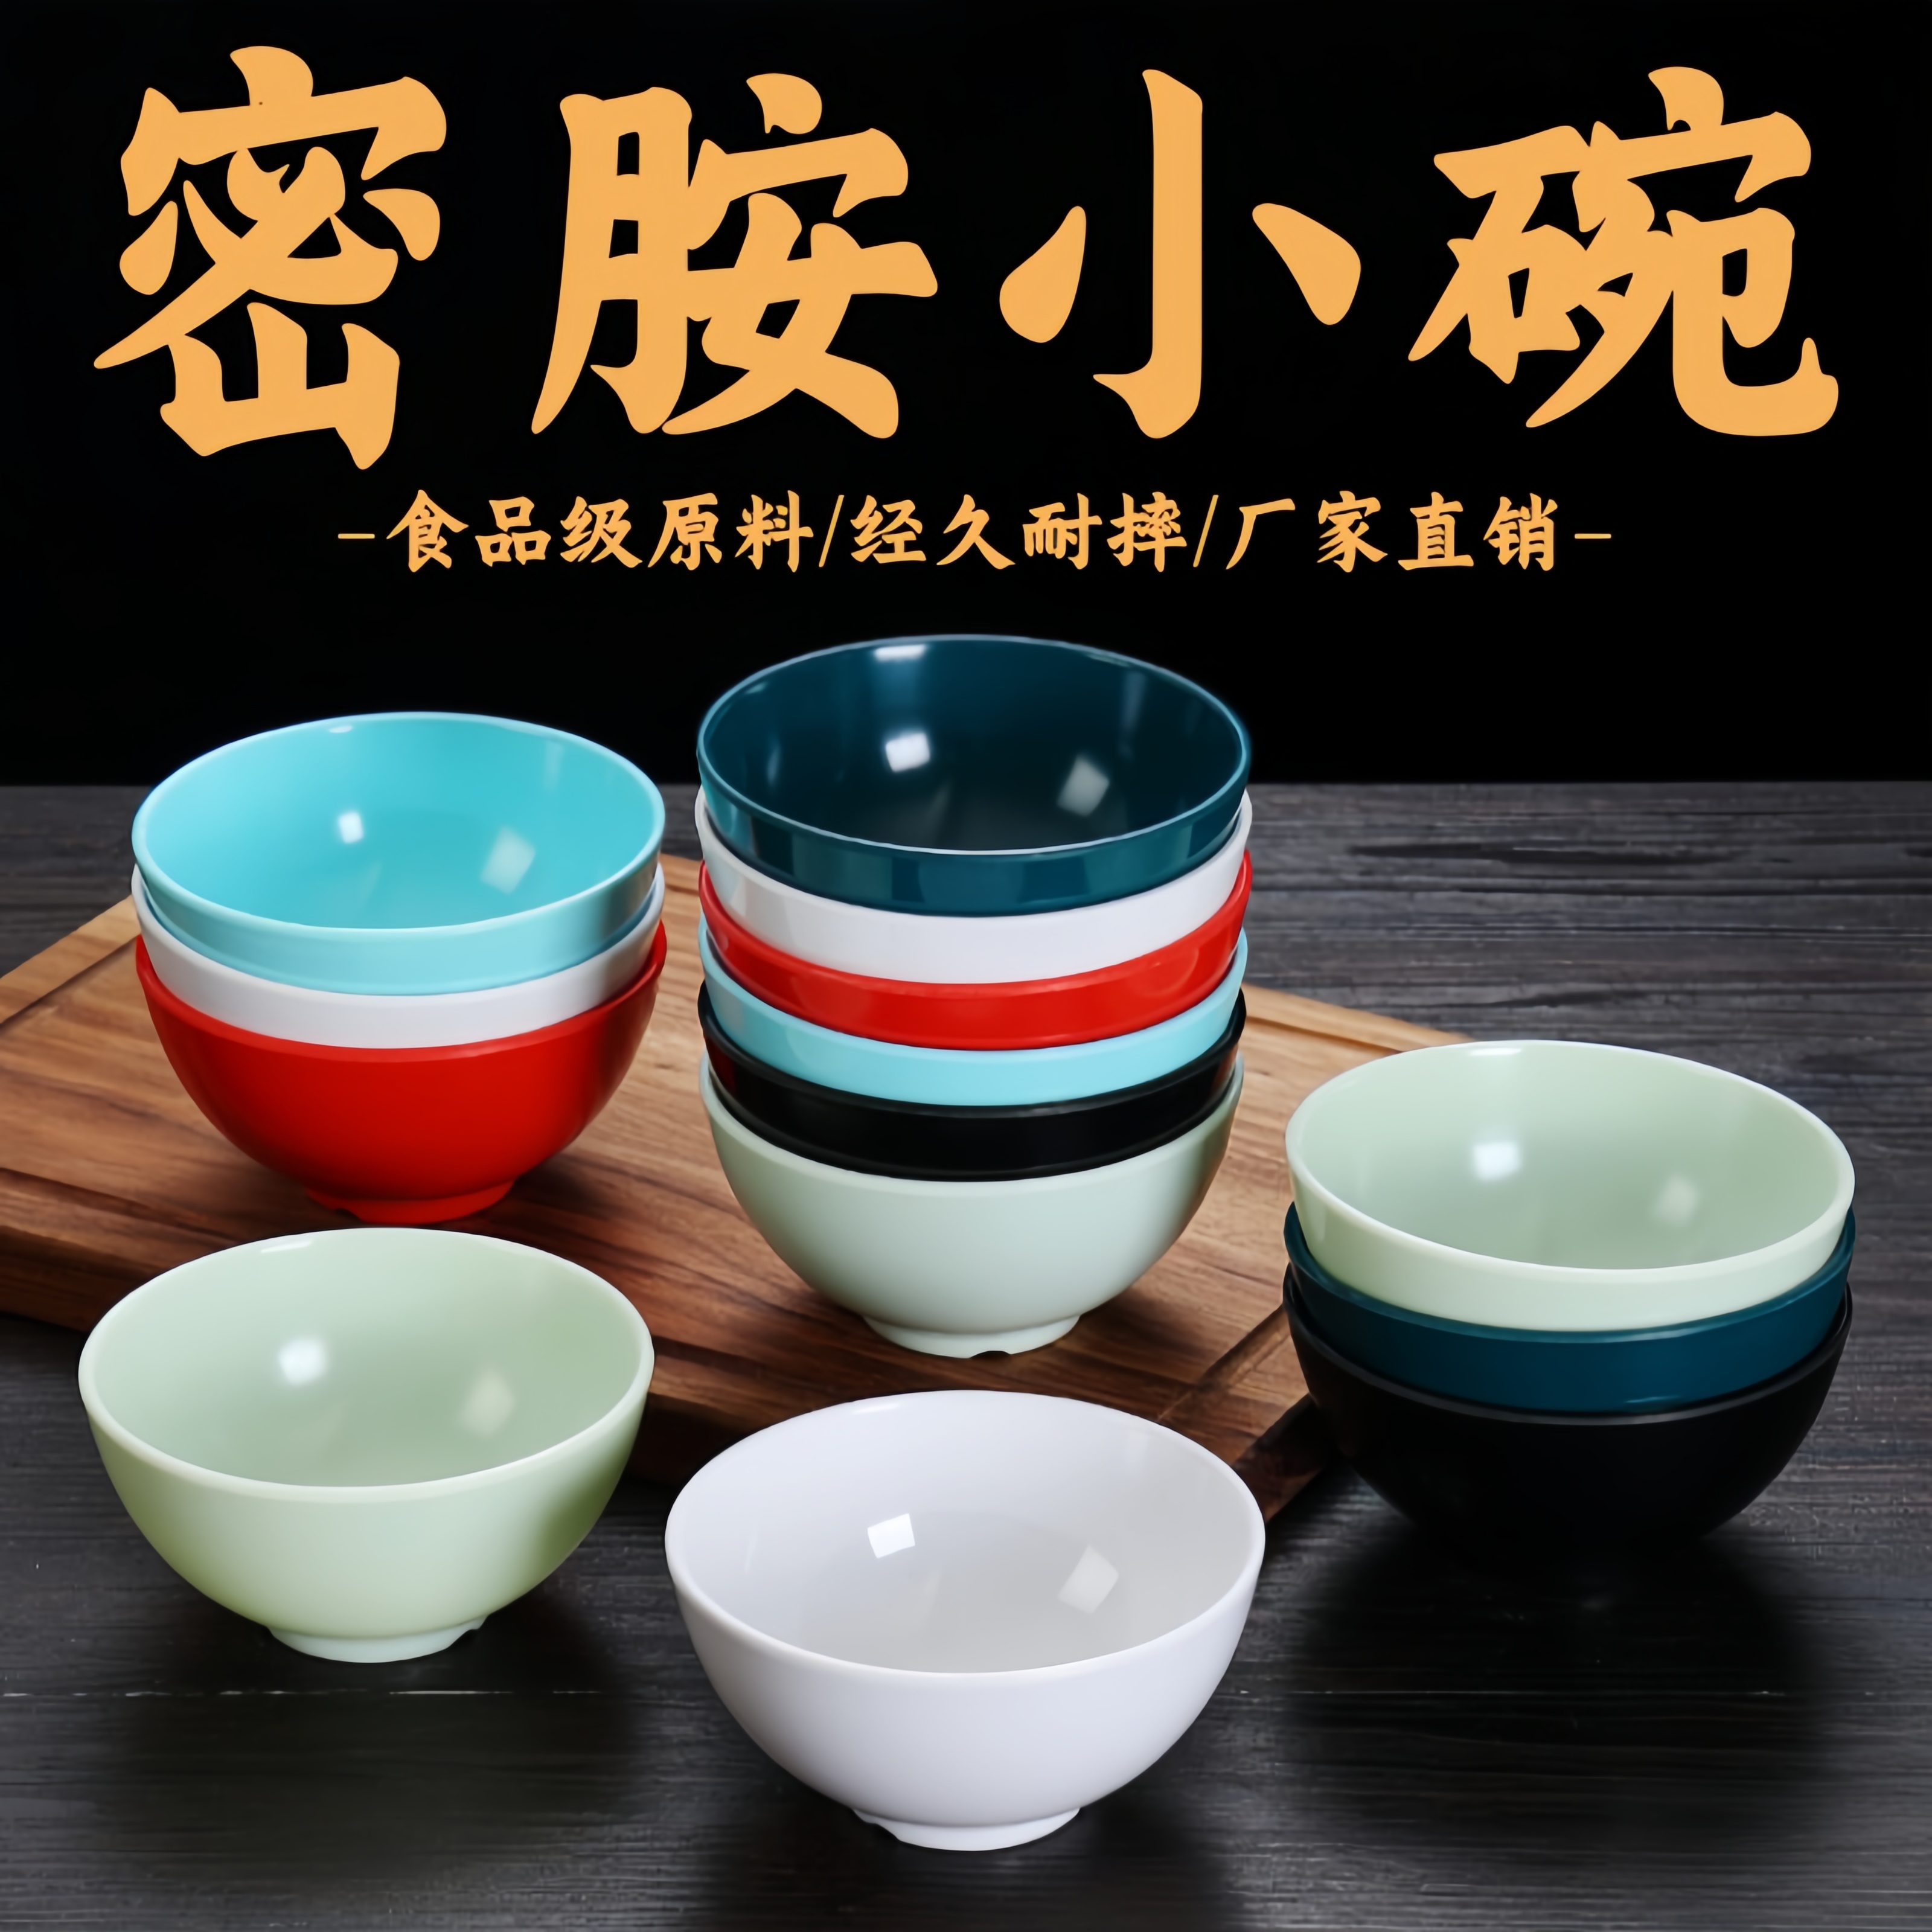 A5密胺碗塑料小碗商用火锅米饭碗汤碗饭店餐厅食堂专用仿瓷碗餐具